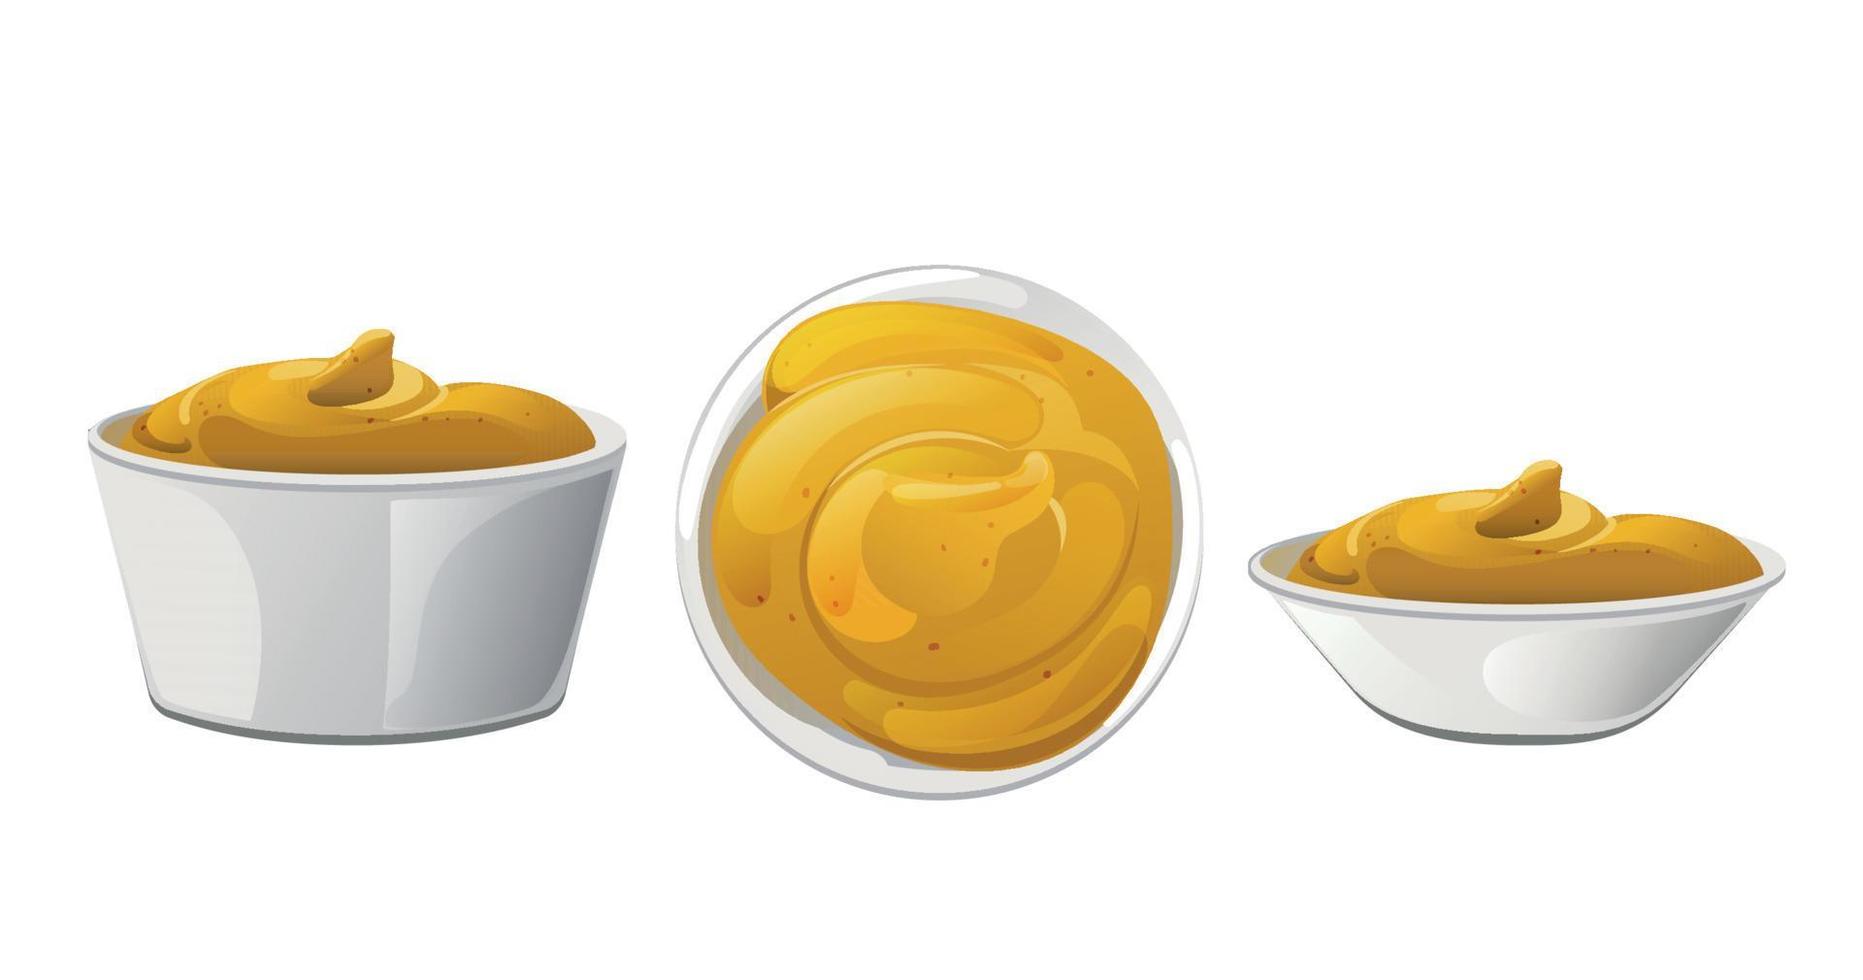 Senfportion in die Schüssel. Dijon-Honig-Sauce-Creme. Vektordesign im Cartoon-Stil für das Branding von Lebensmitteln. vektor